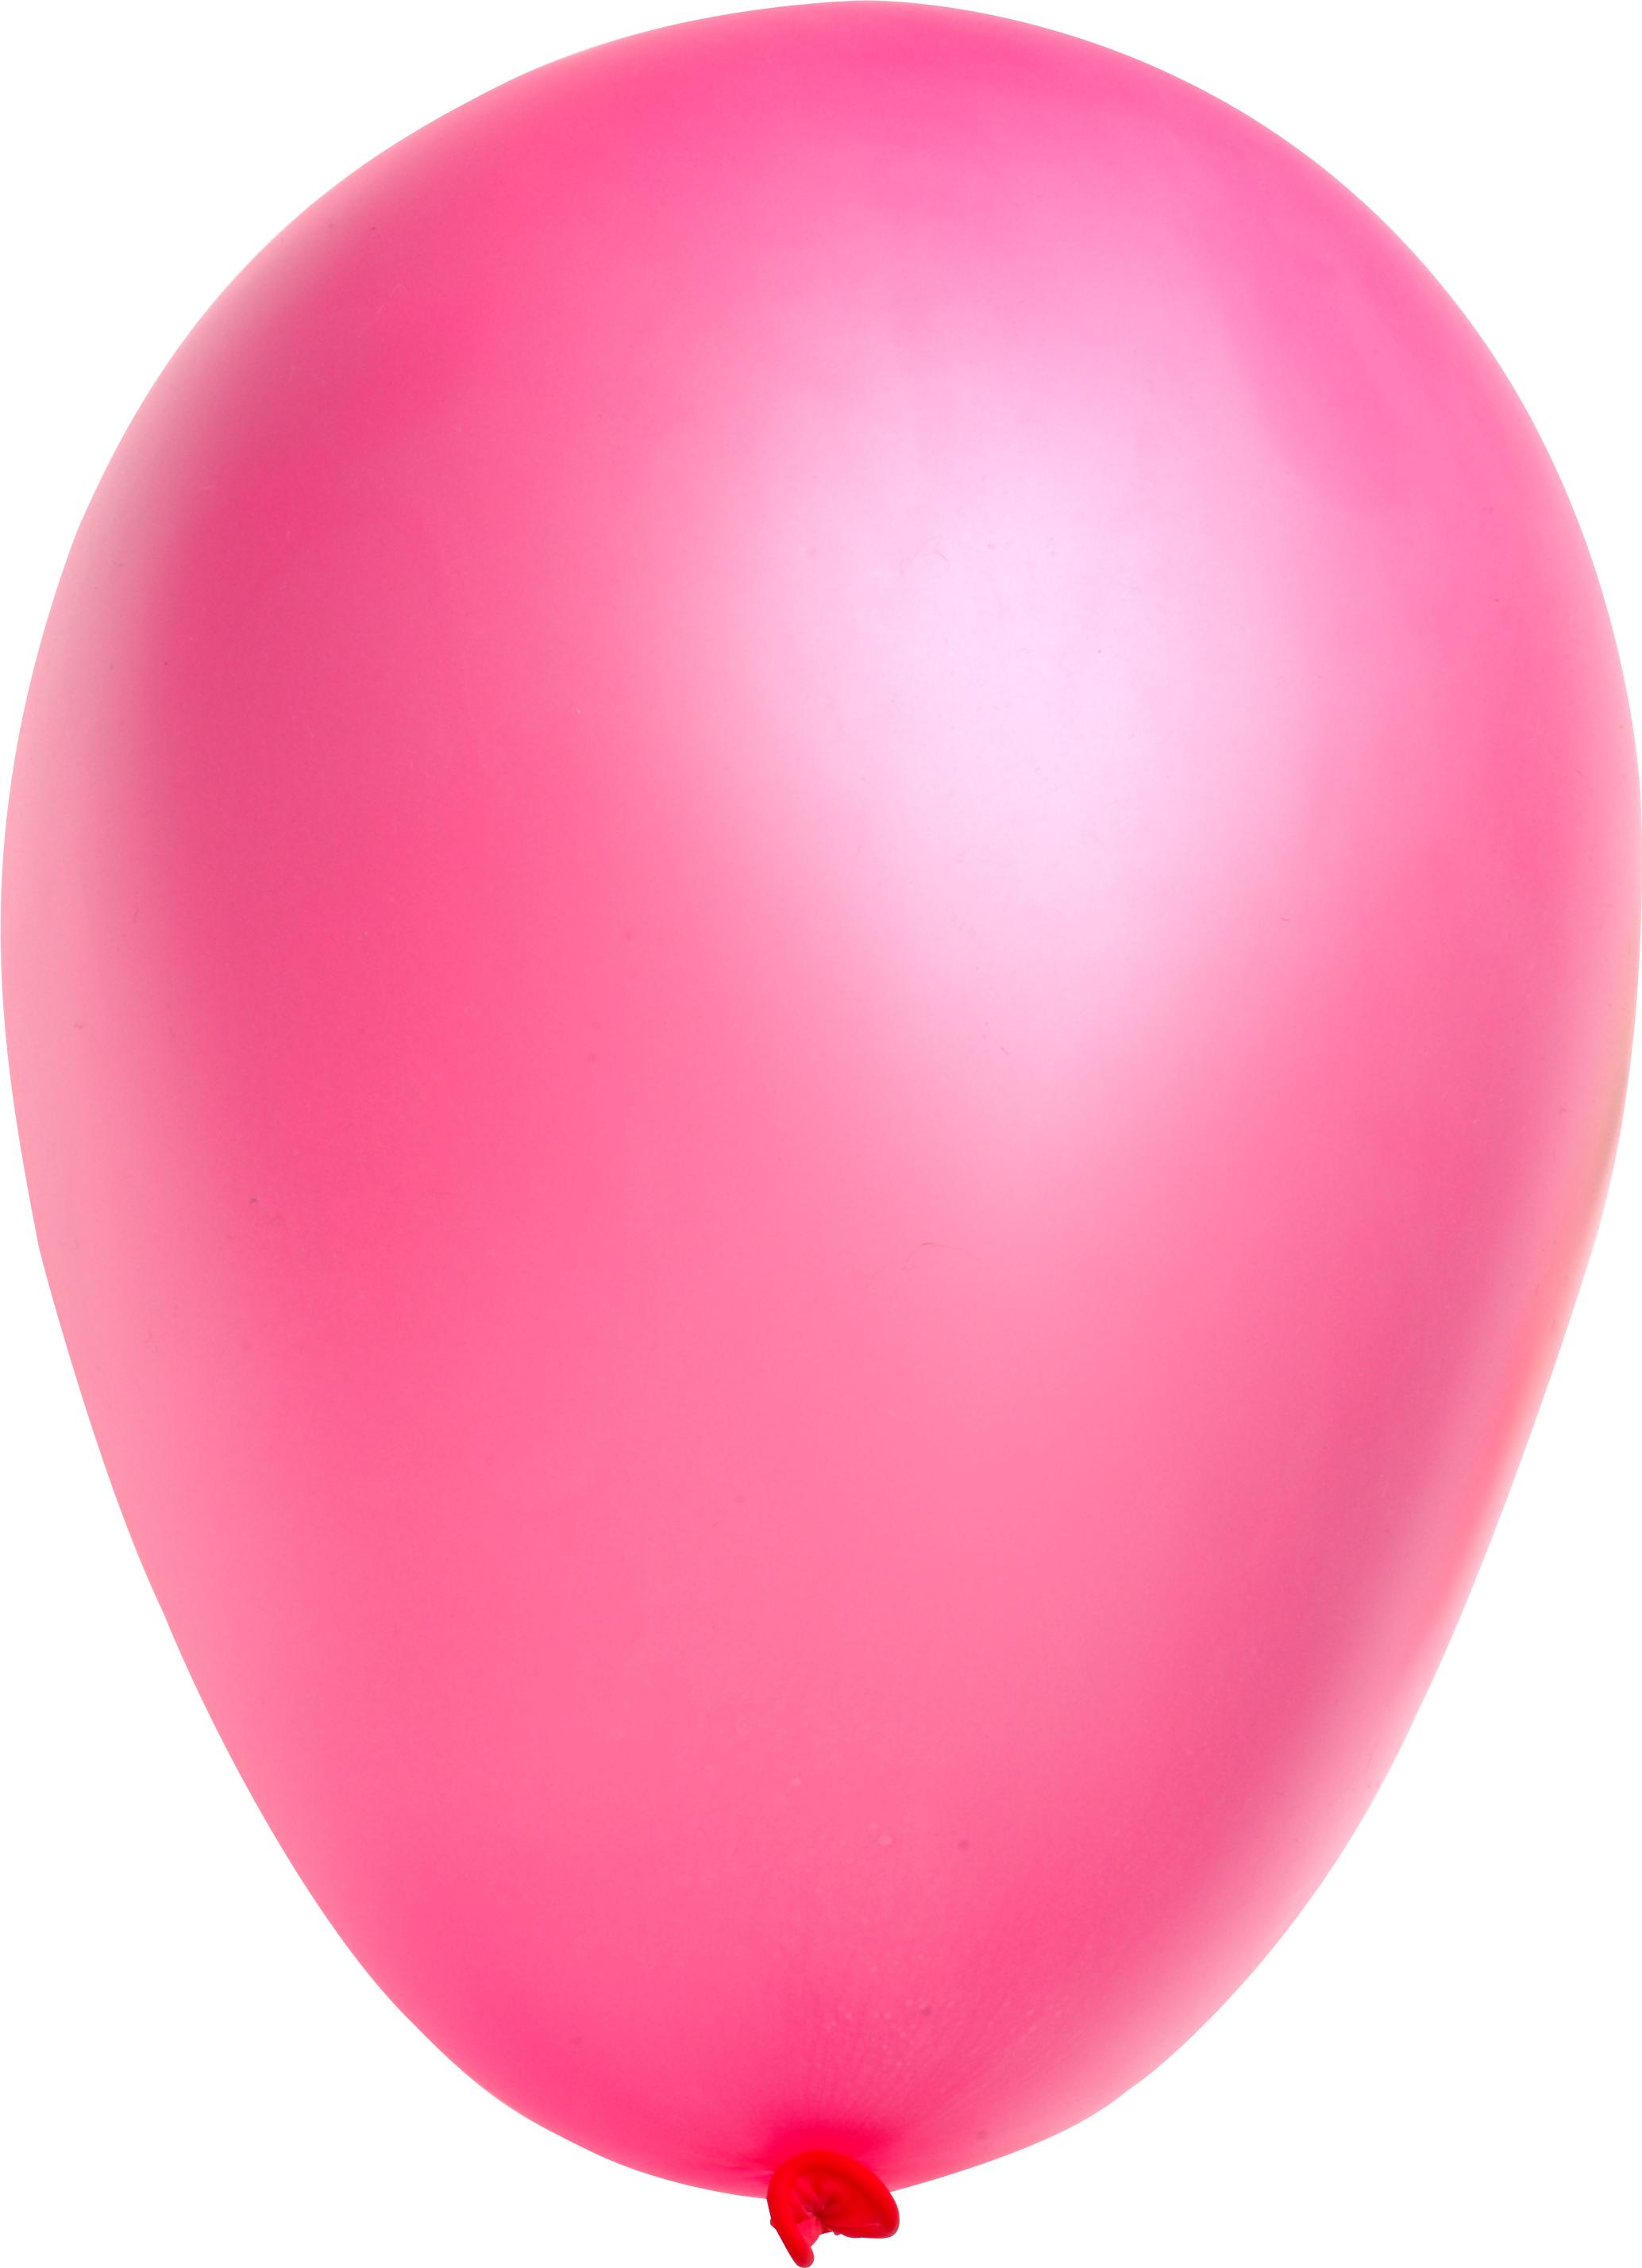 Ballon Telecharger Gratuit PNG